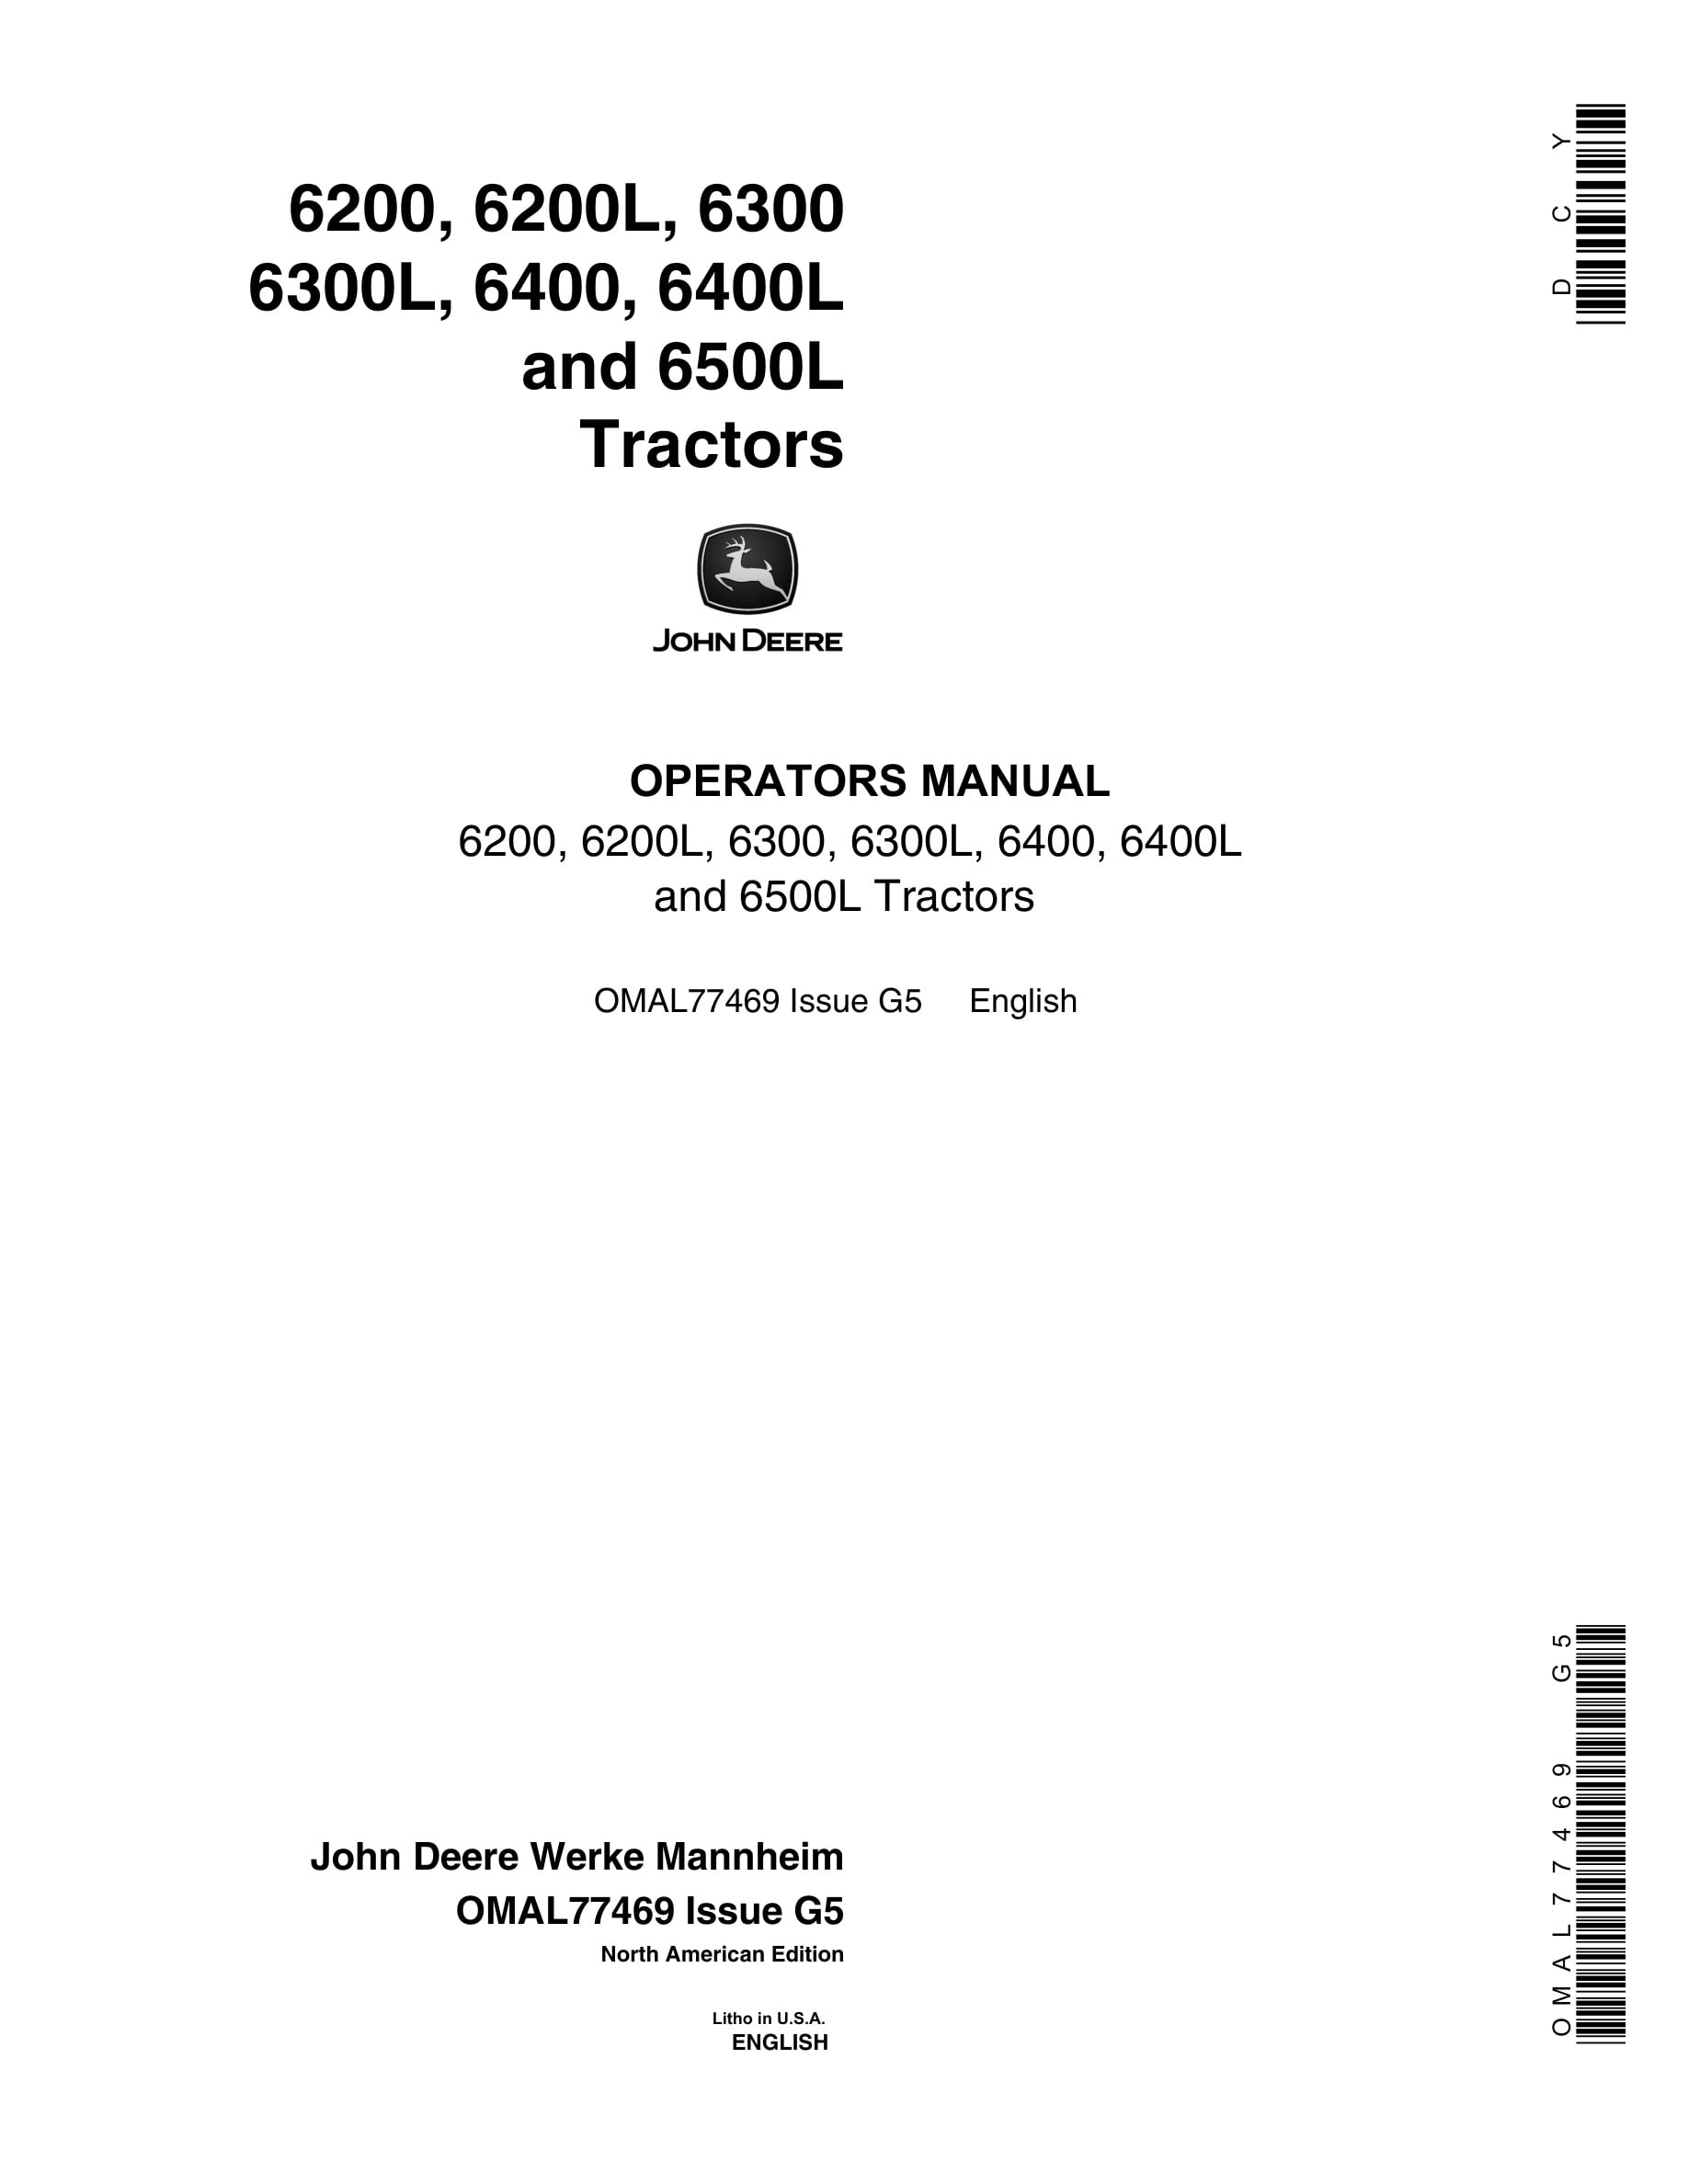 John Deere 6200 6200l 6300 6300l 6400 6400l 6500l Tractors Operator Manuals OMAL77469-1